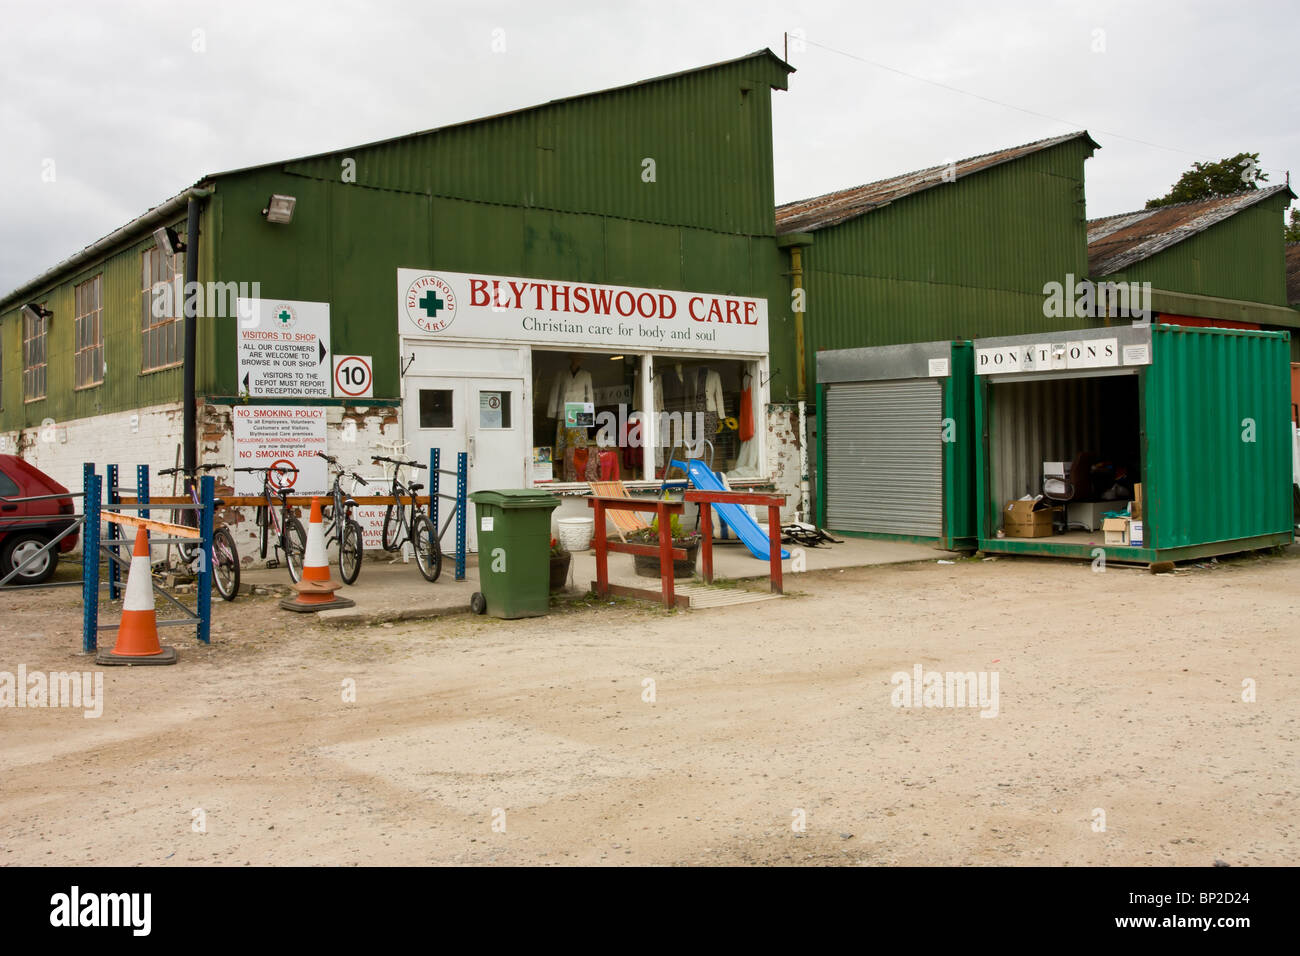 Almacén, tienda benéfica Blythswood Alness en Moray Firth, cerca de Inverness, en las Highlands escocesas. Foto de stock